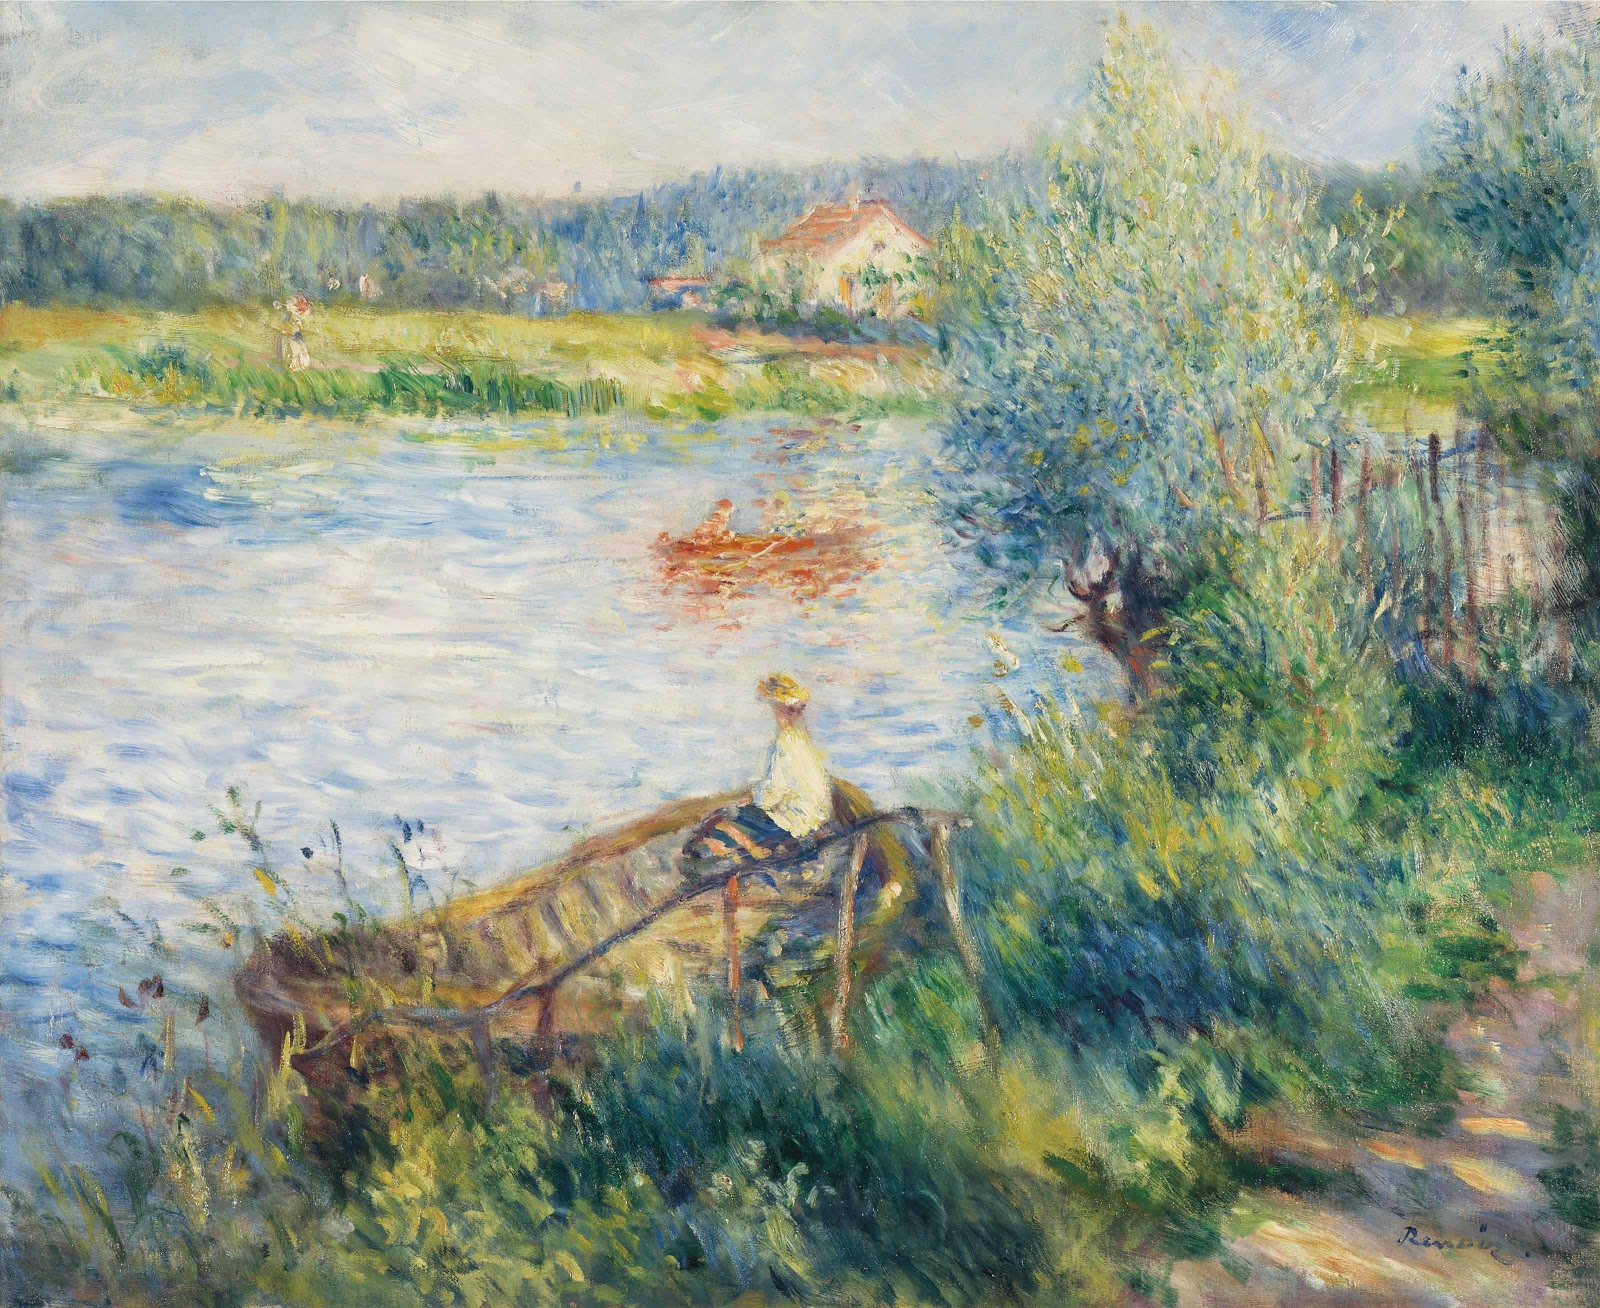 Pierre+Auguste+Renoir-1841-1-19 (803).jpg